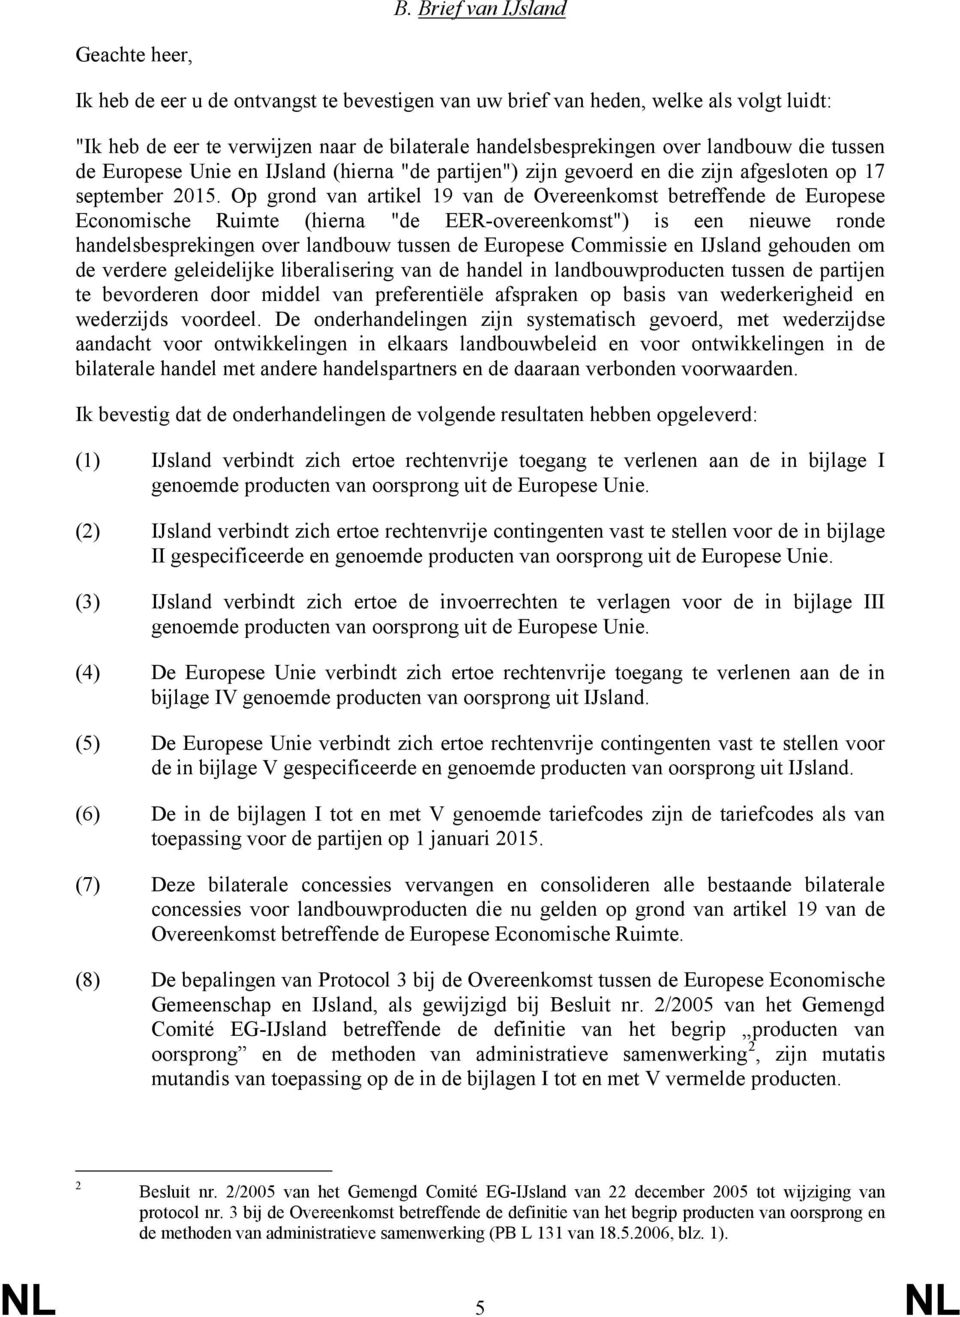 Op grond van artikel 19 van de Overeenkomst betreffende de Europese Economische Ruimte (hierna "de EER-overeenkomst") is een nieuwe ronde handelsbesprekingen over landbouw tussen de Europese